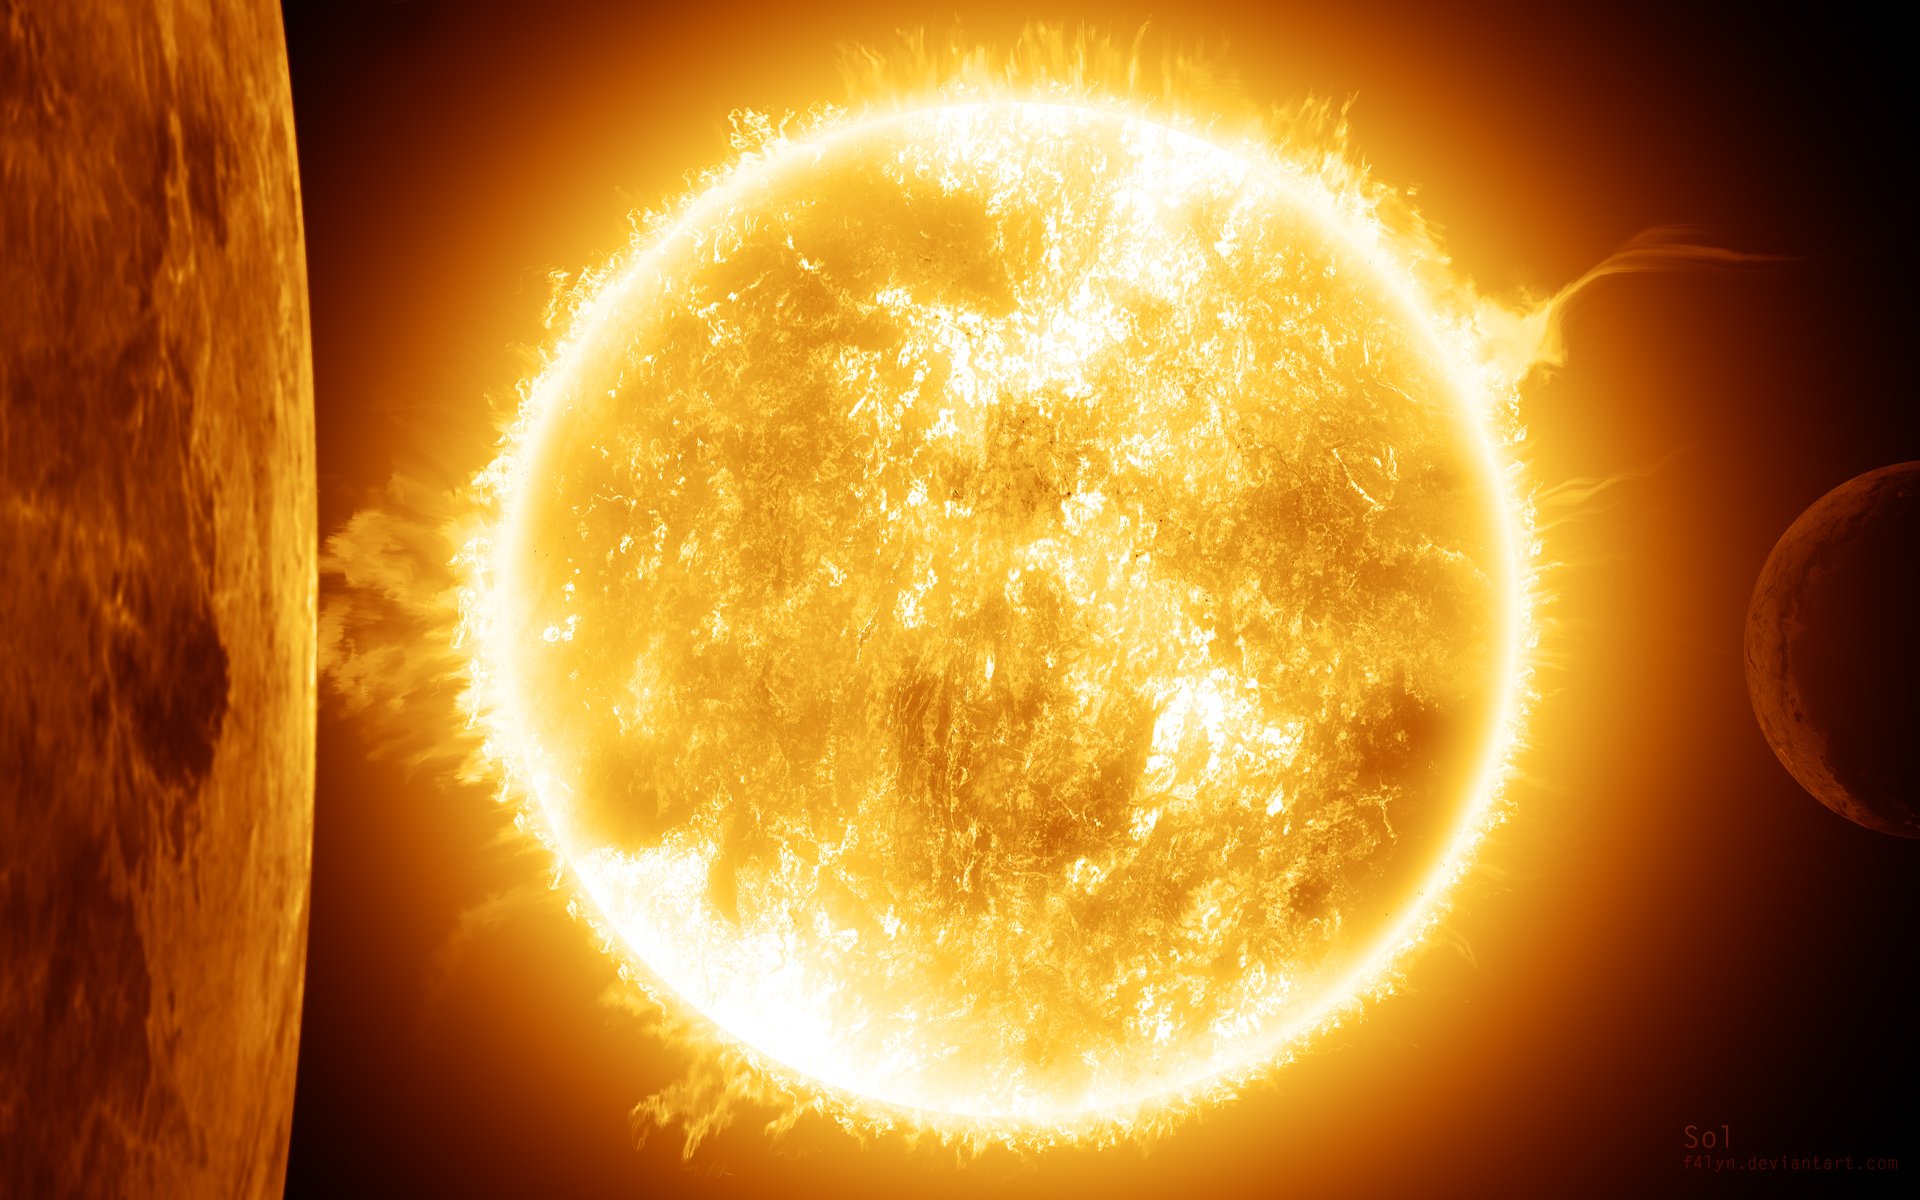 Фото солнца из космоса в высоком качестве в натуральном цвете